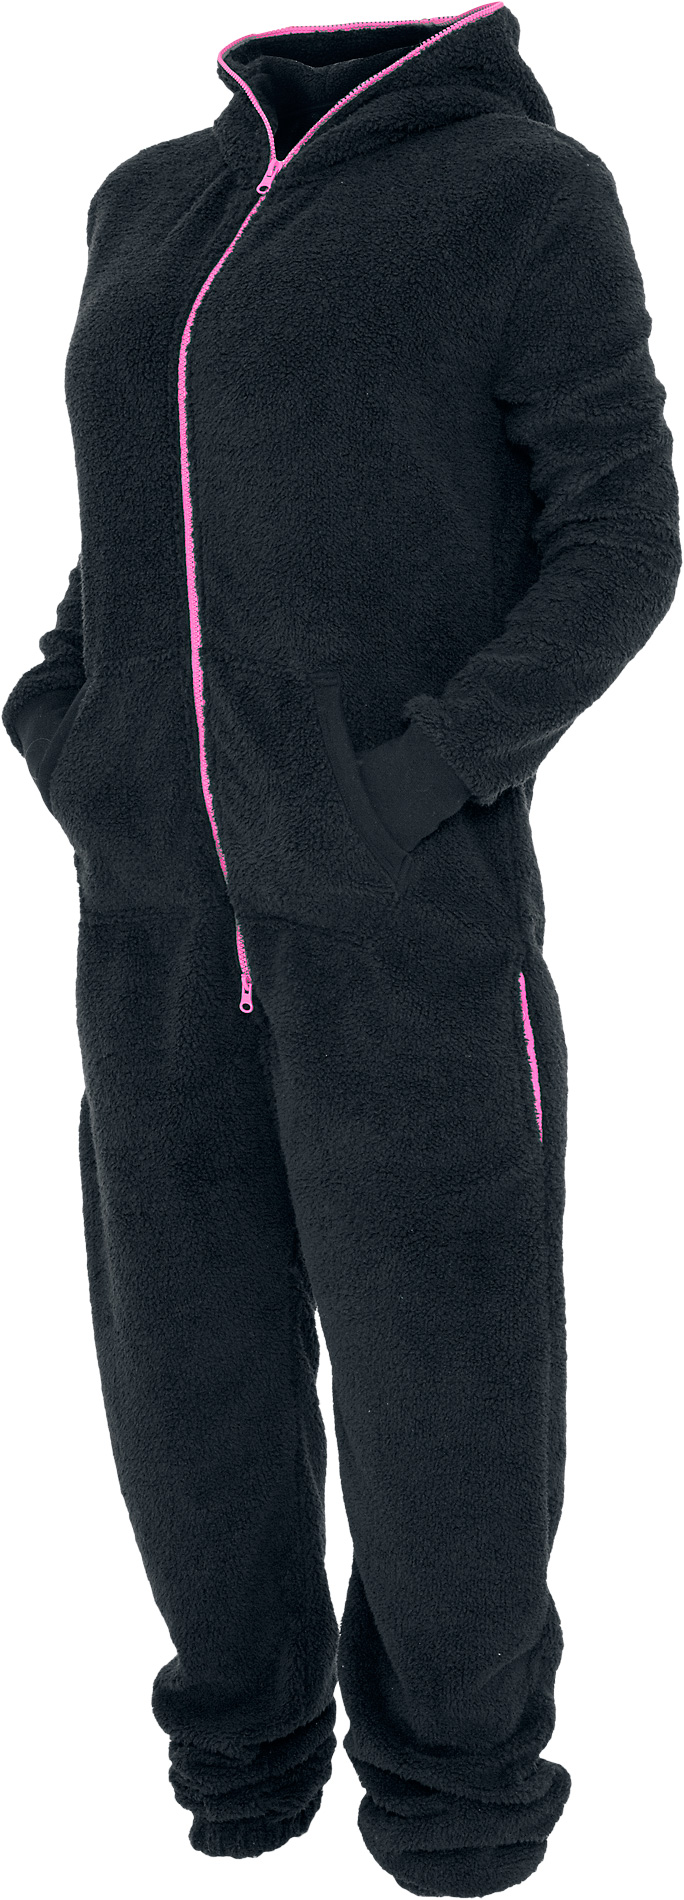 Urban Classics Overall - Ladies Teddy Jumpsuit - XS-S bis XL-XXL - für Damen - Größe XL-XXL - schwarz